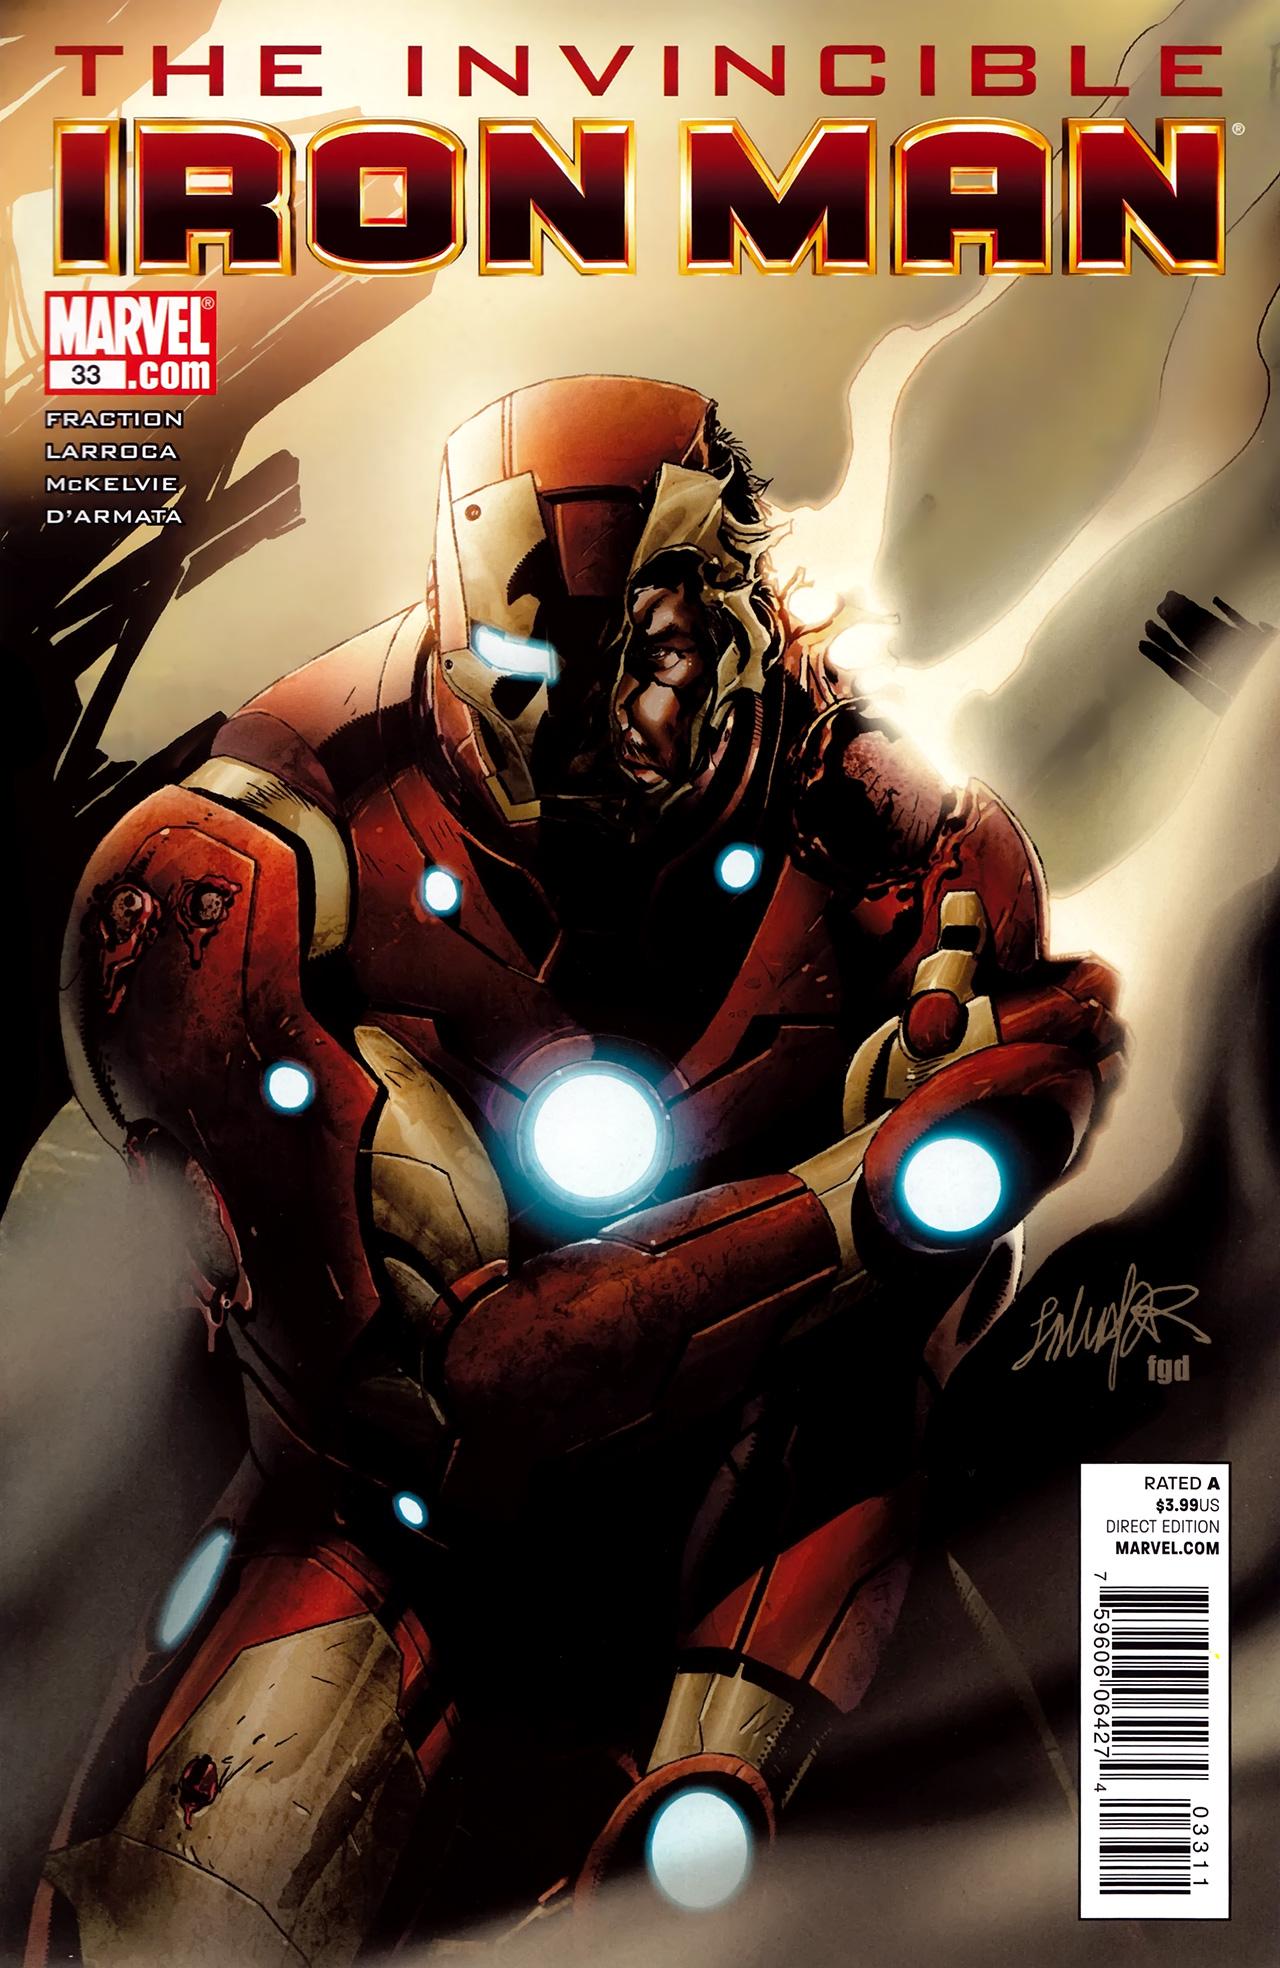 Invincible Iron Man Vol. 1 #33